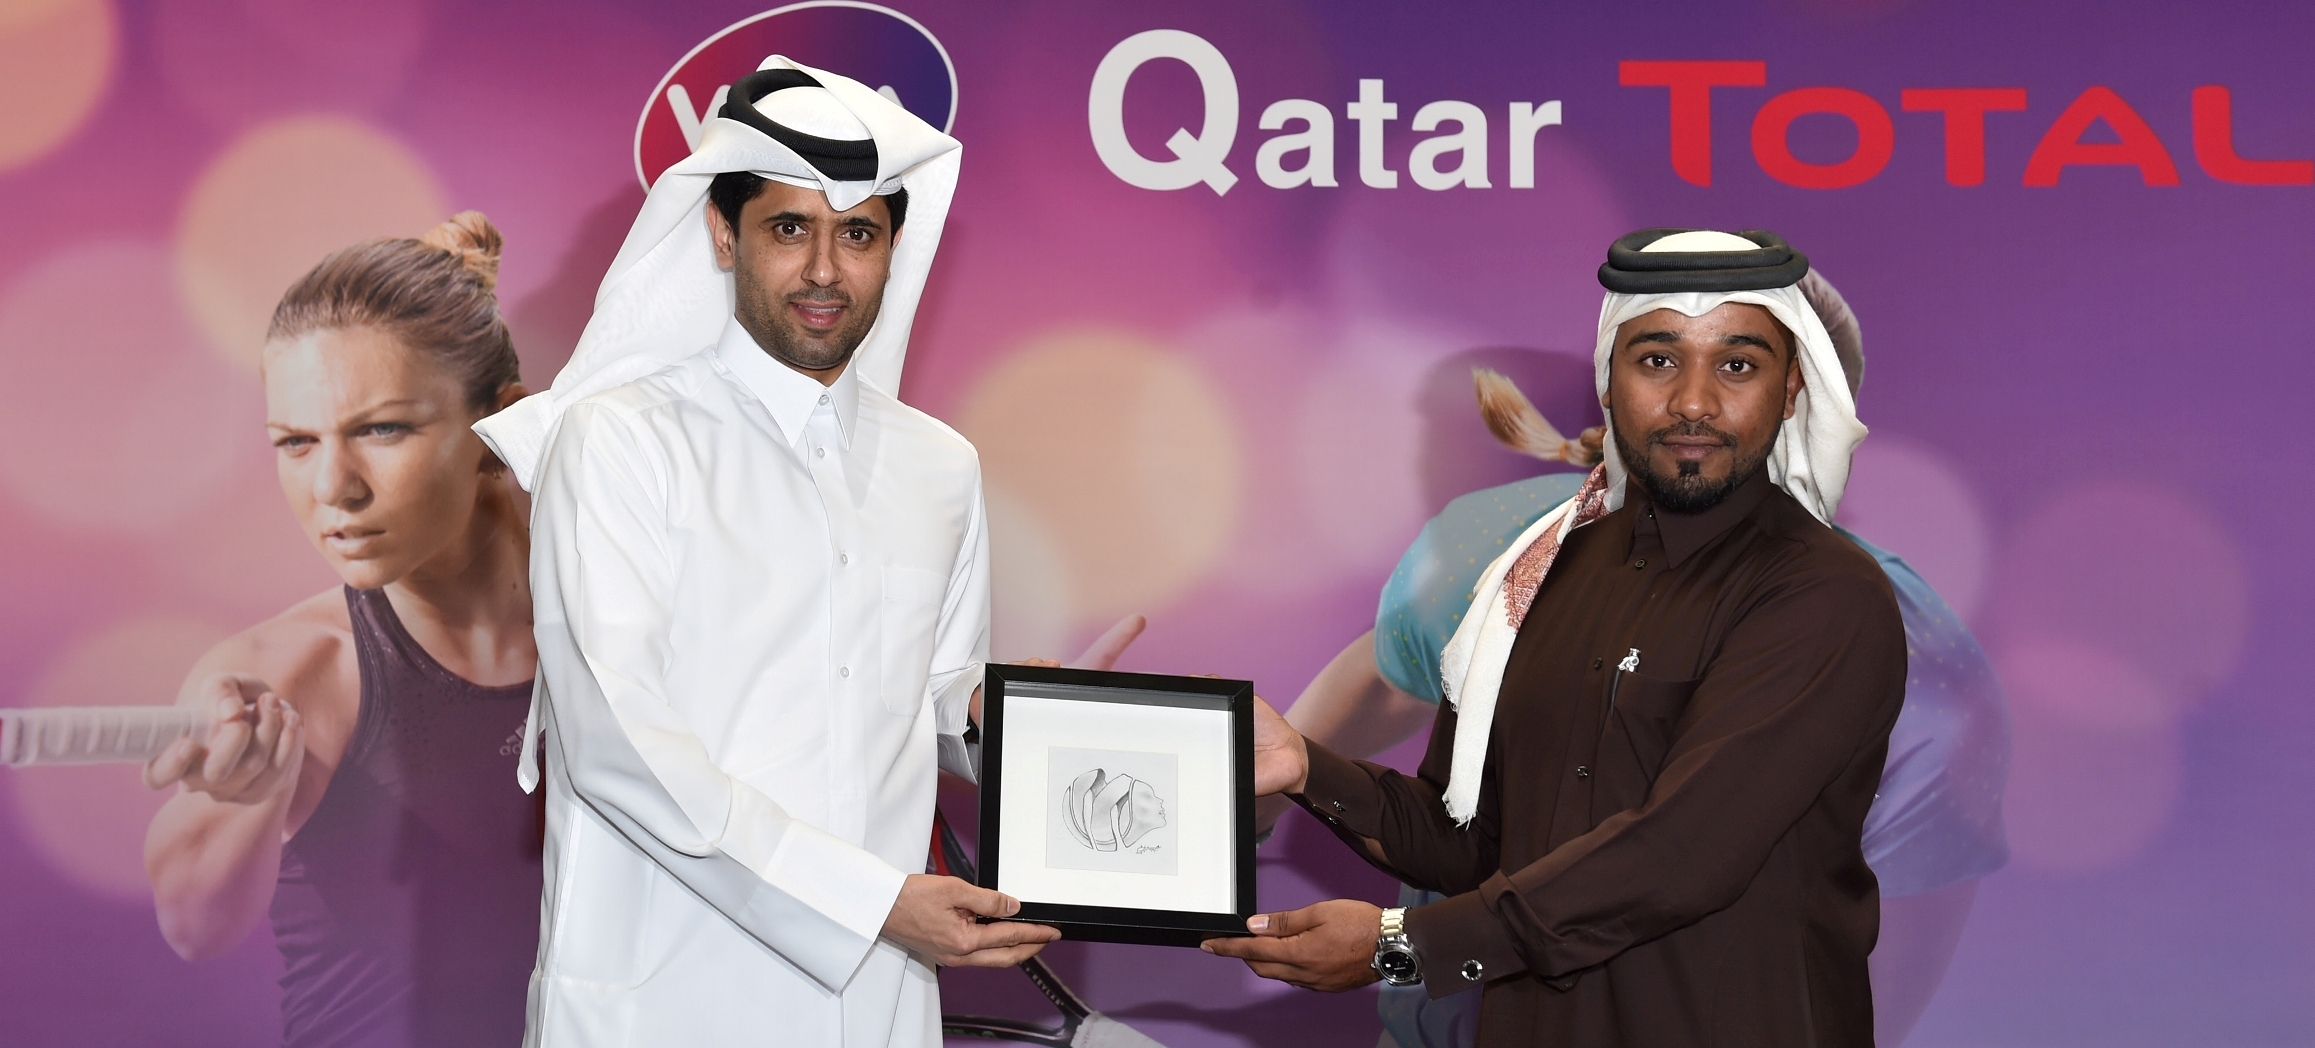 Qatar
news
total_commemorates_qtf
1
EN_US